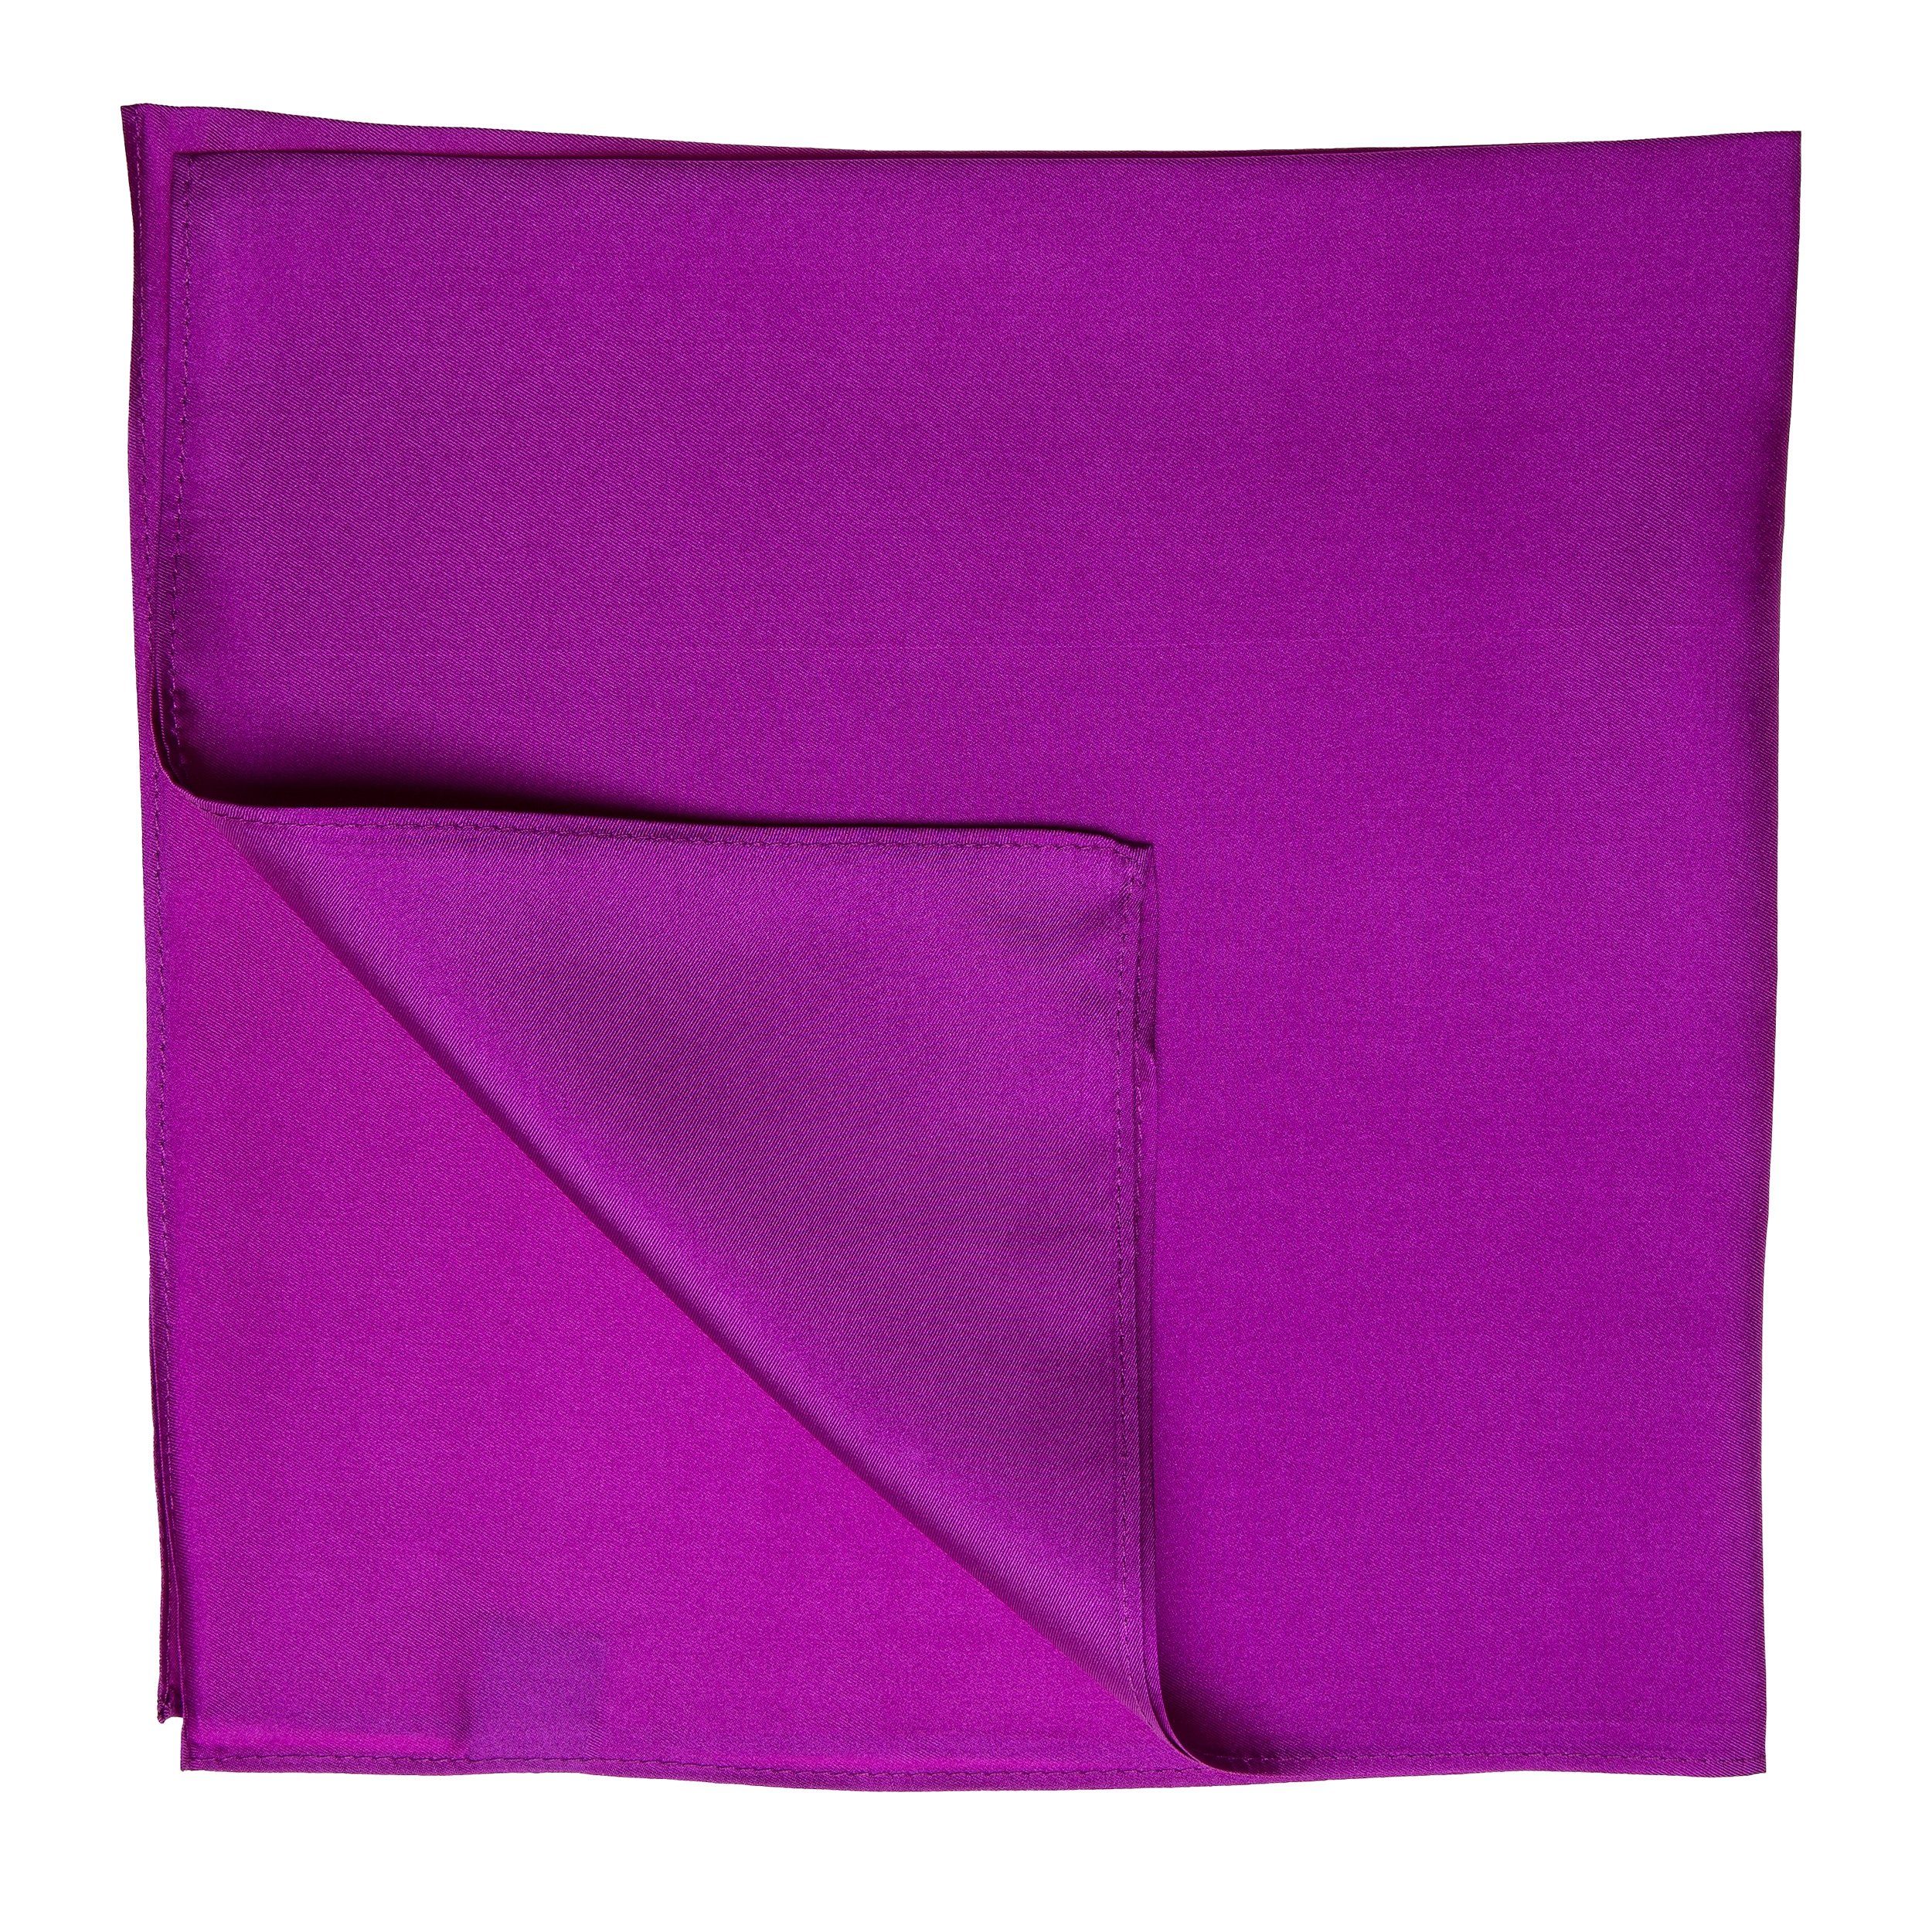 Twill Seidentuch Nickituch Halstuch purpur-violett TINITEX